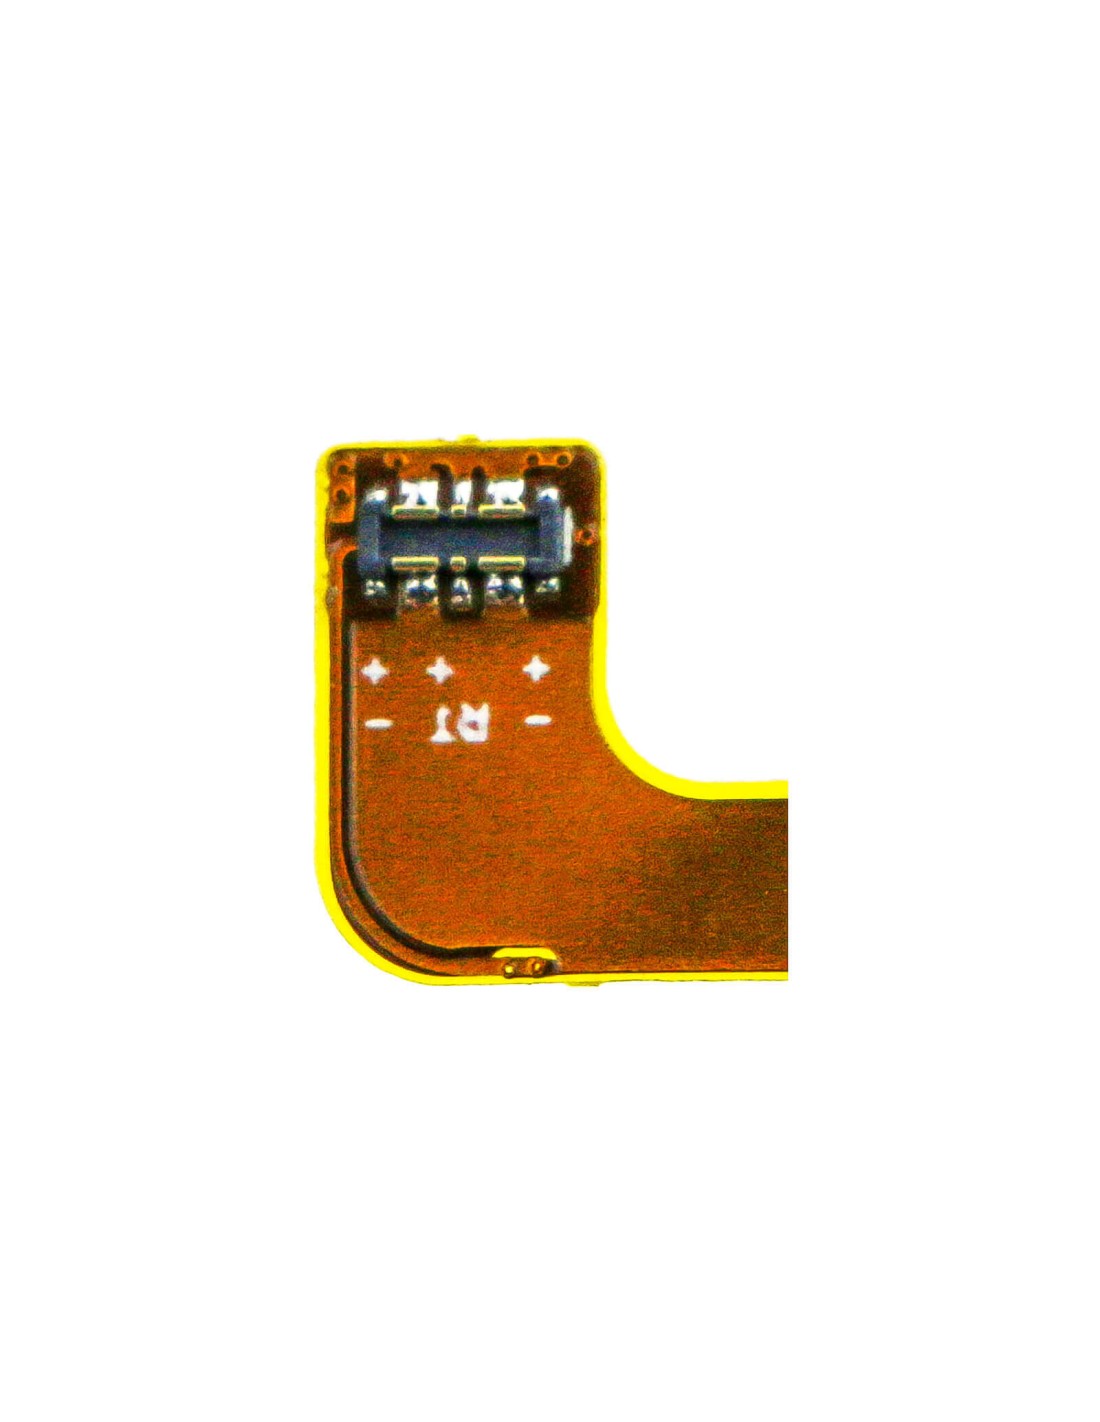 Battery for Doro, 8040, Dsb-0090, 3.8V, 2200mAh - 8.36Wh